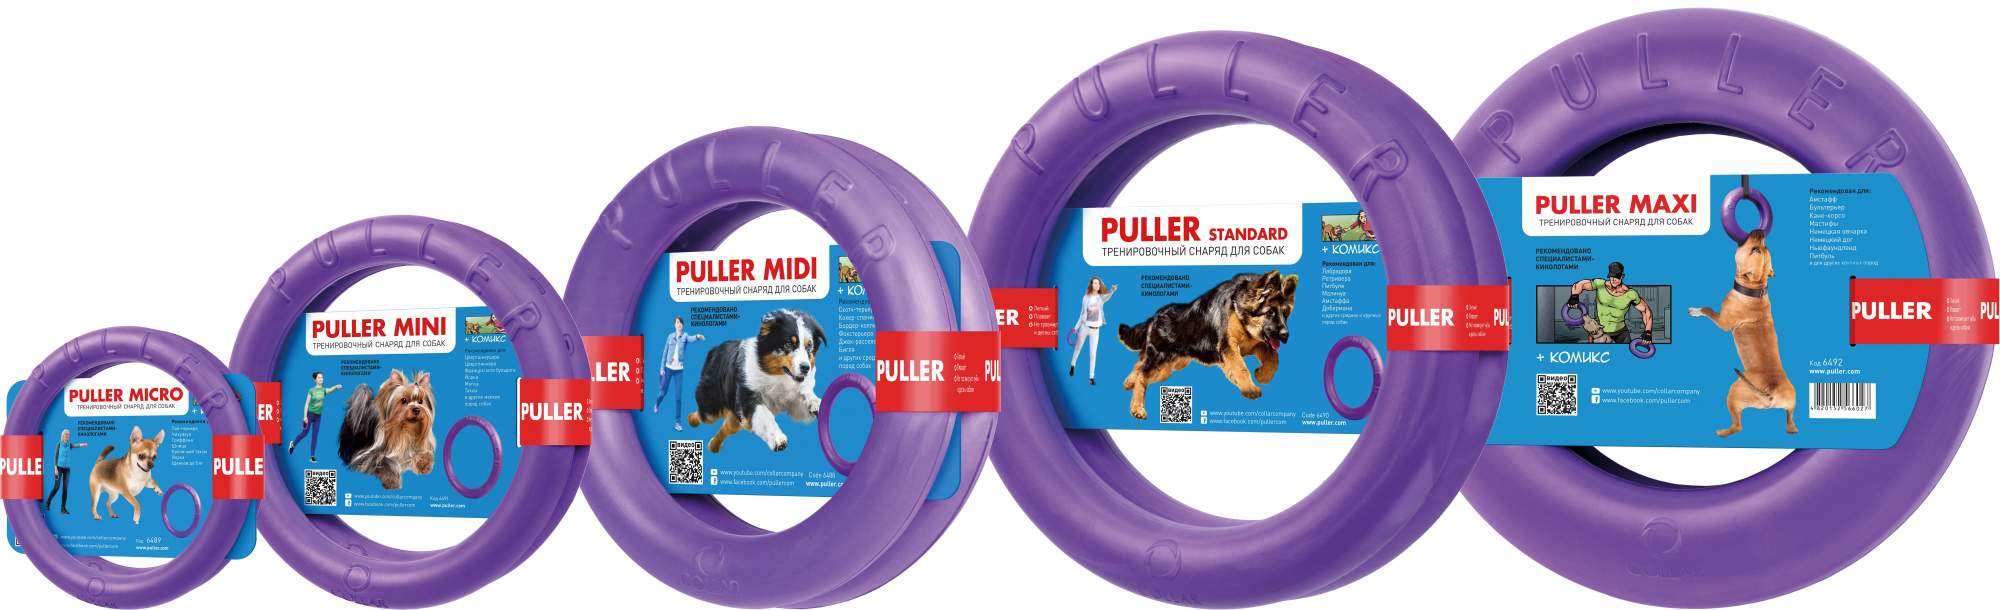 Апорт для собак PULLER Тренировочный снаряд, фиолетовый, 13 см